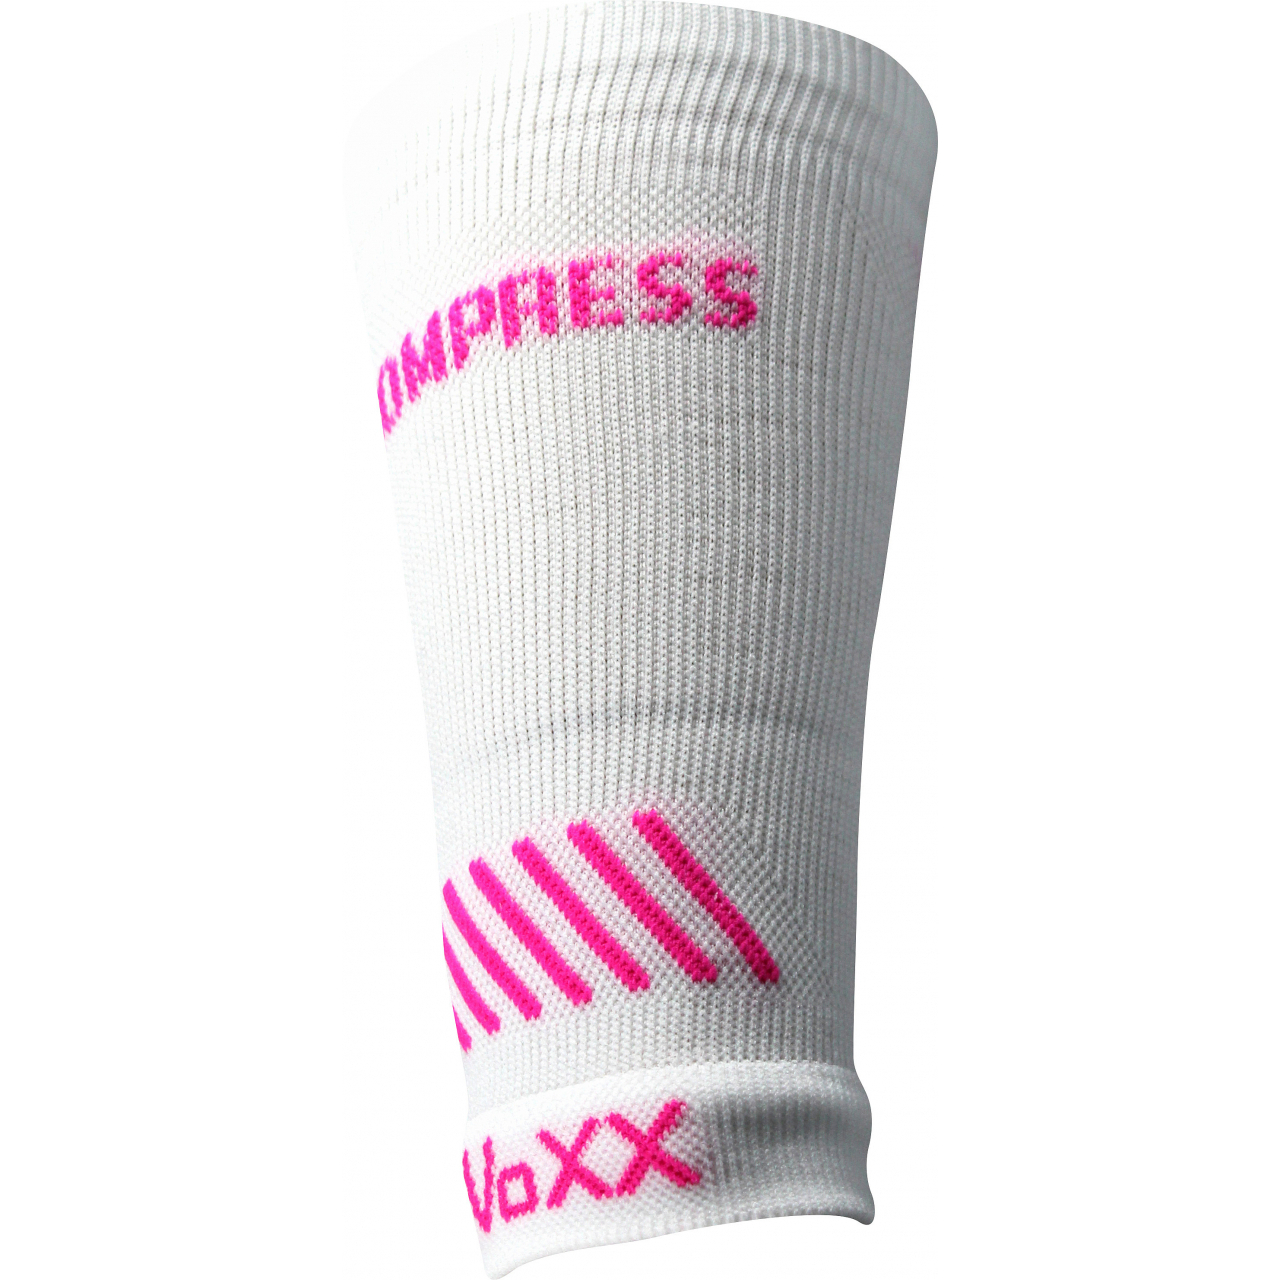 Návlek kompresní Voxx Protect zápěstí - bílý-růžový, L/XL